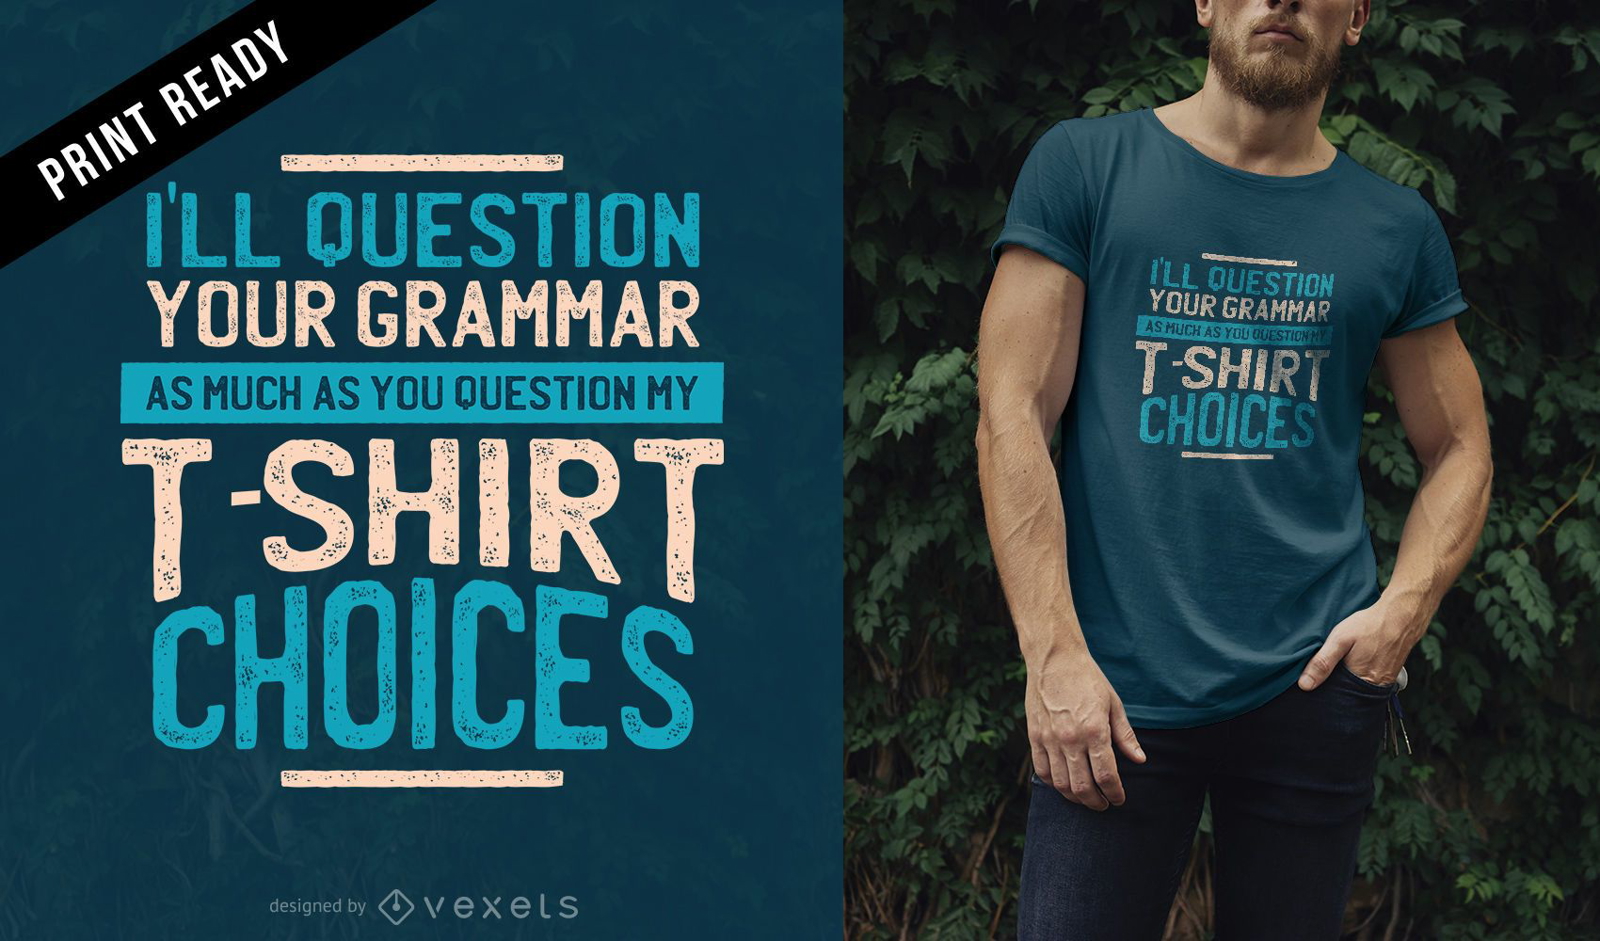 Questione o design da sua camiseta de gramática